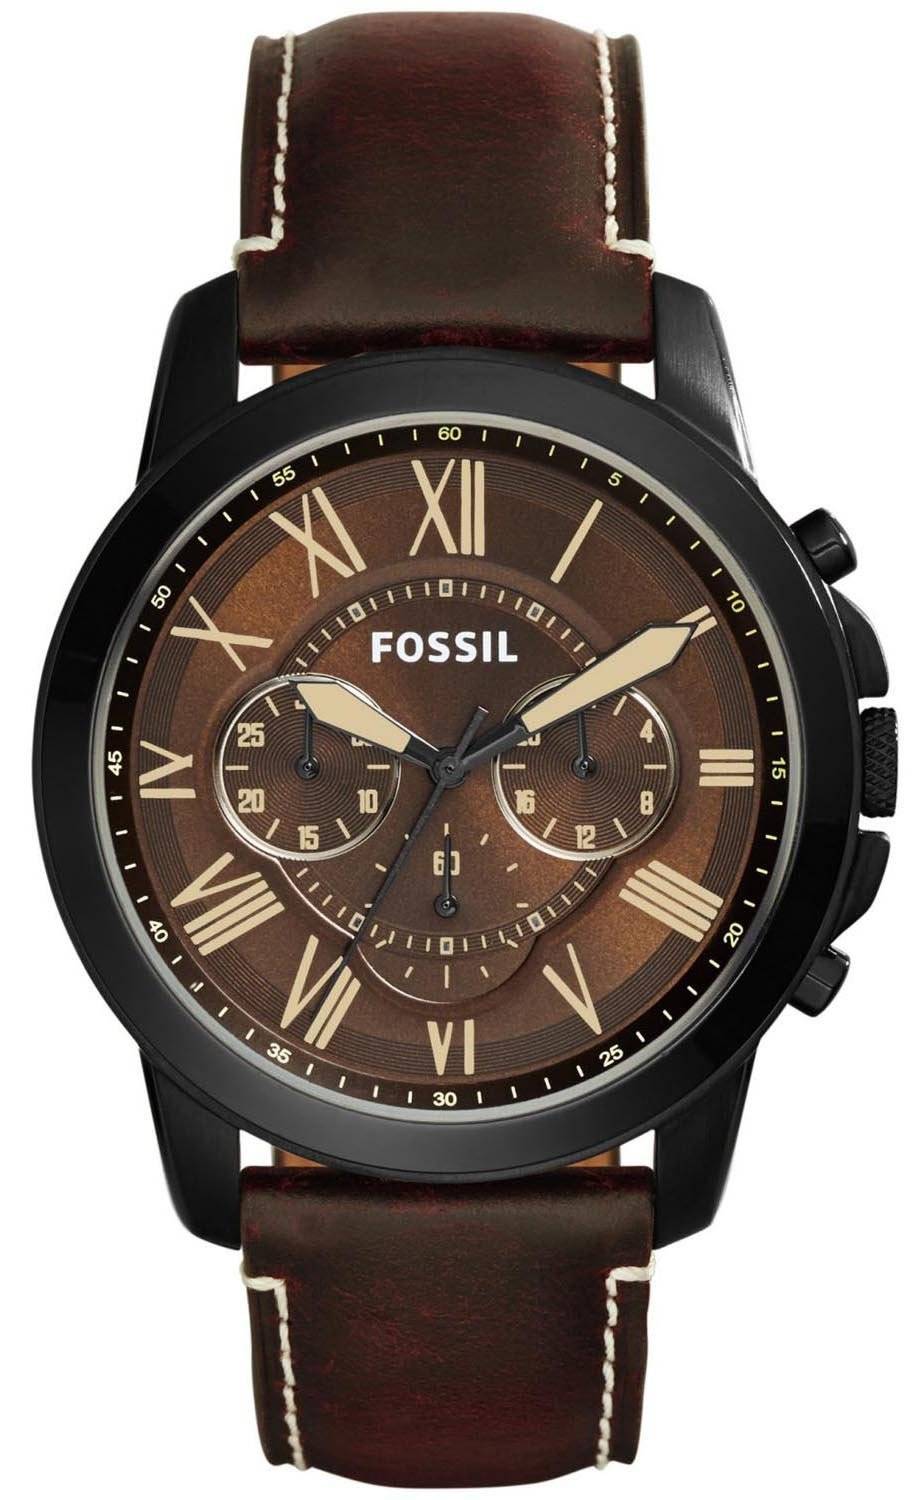 化石を与えるクロノグラフ ブラウン ダイアル ブラウン レザー FS5088 メンズ腕時計